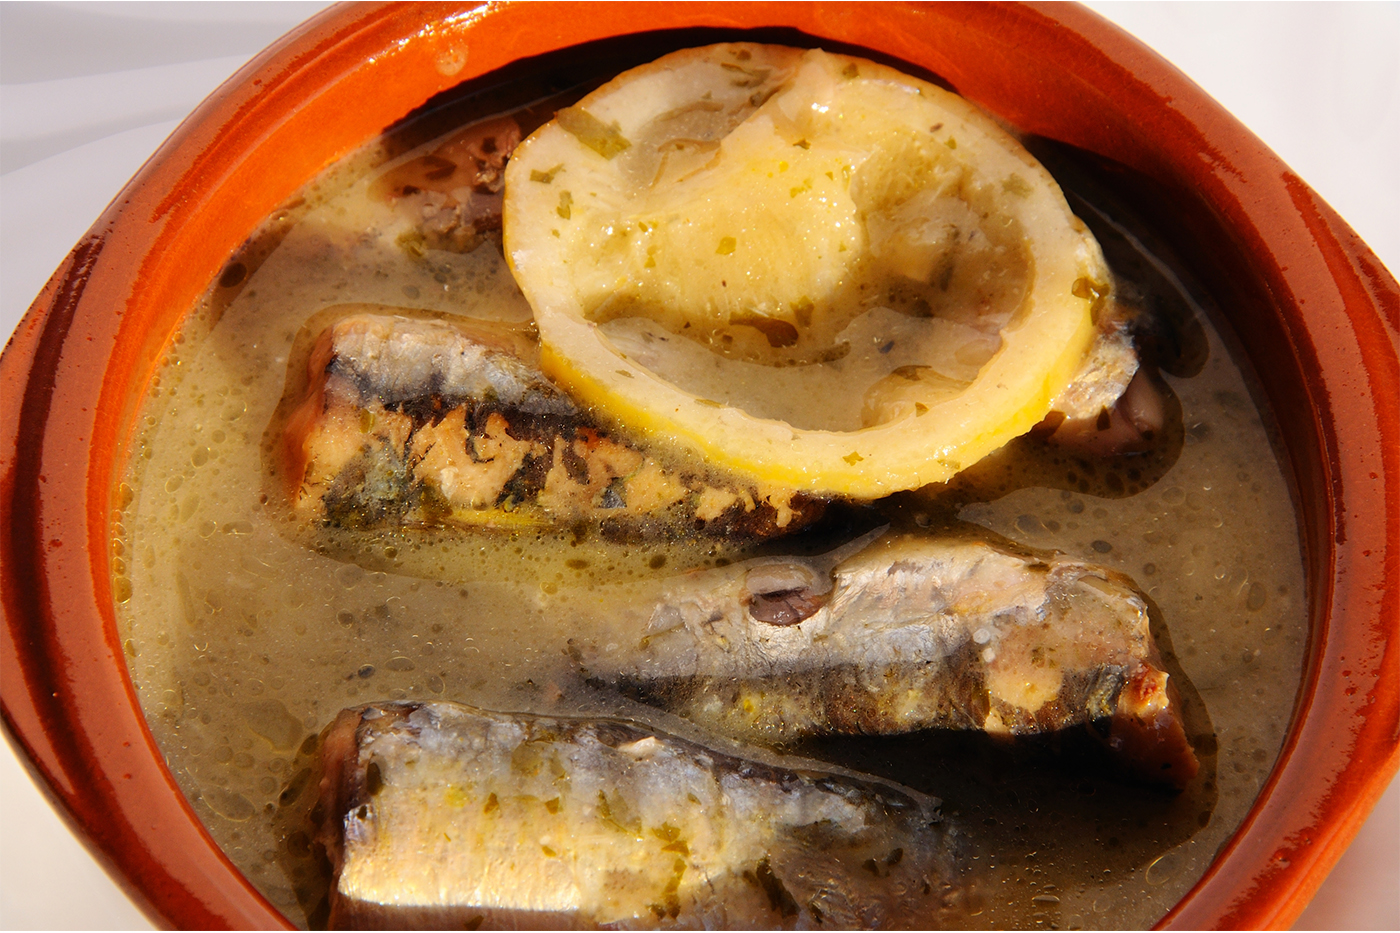 sardines in lemon sauce